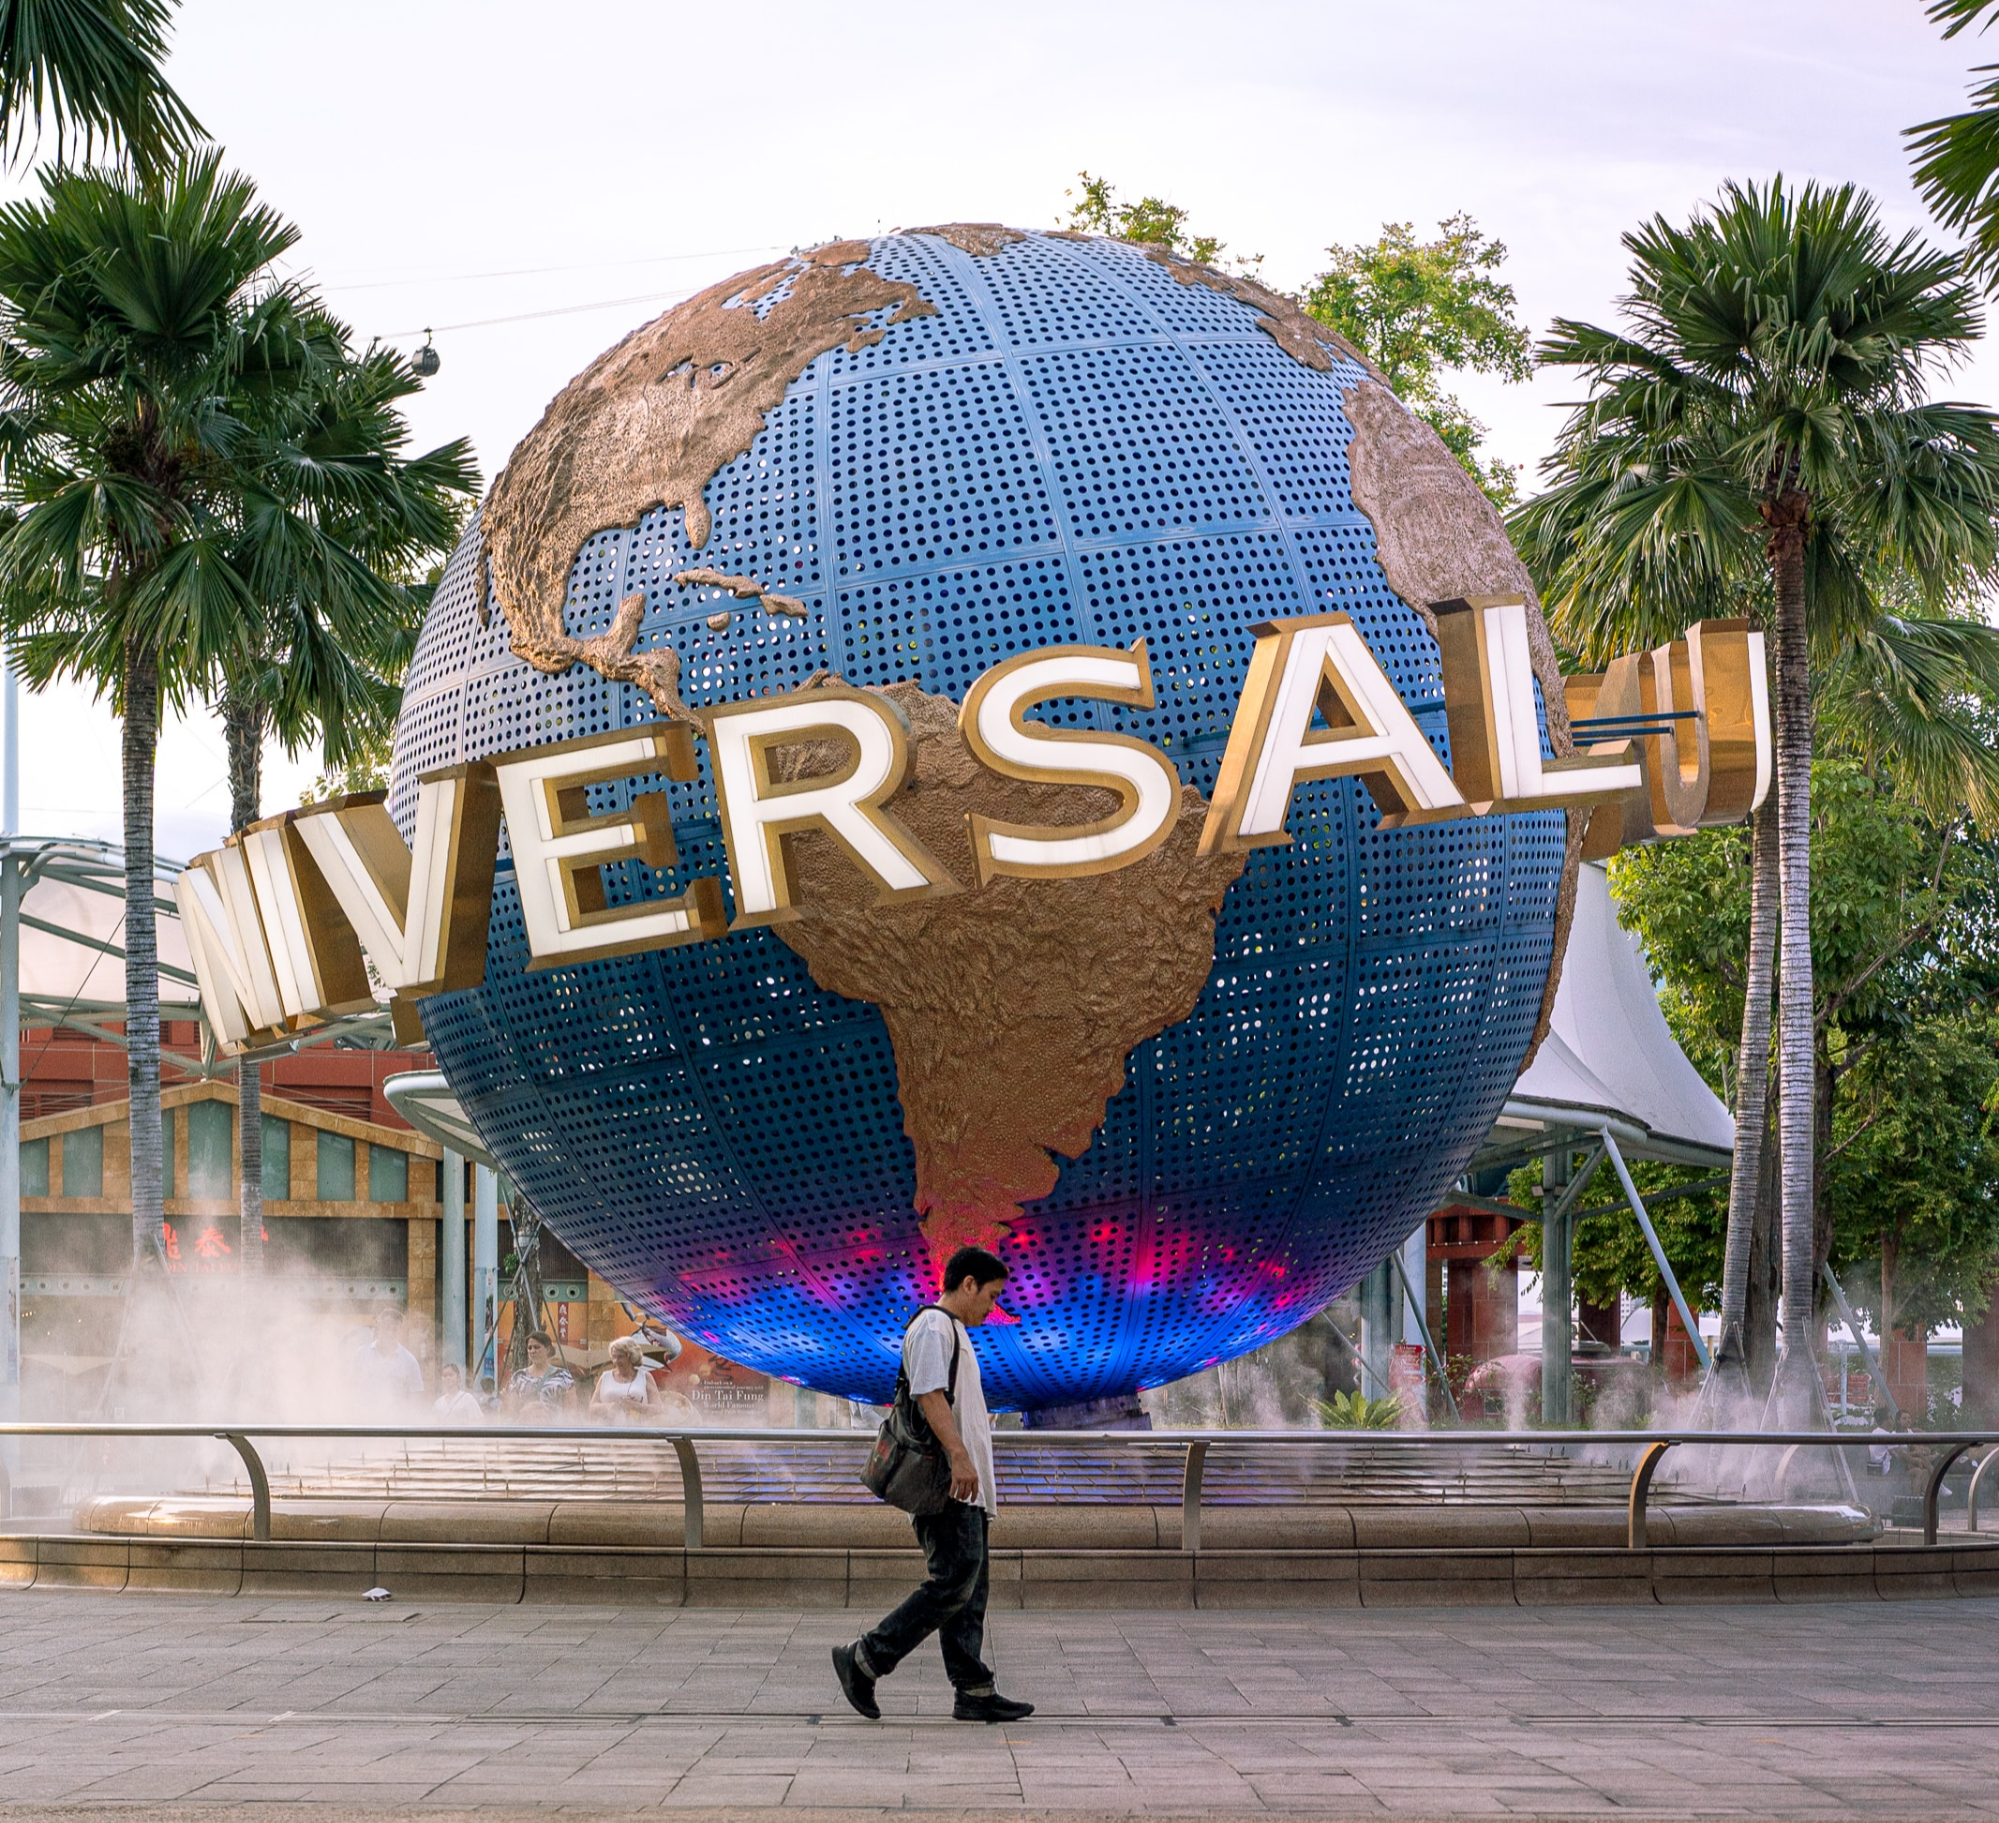 싱가포르 유니버설 스튜디오의 상징인 지구본과 그 앞을 지나가는 한 남자의 모습